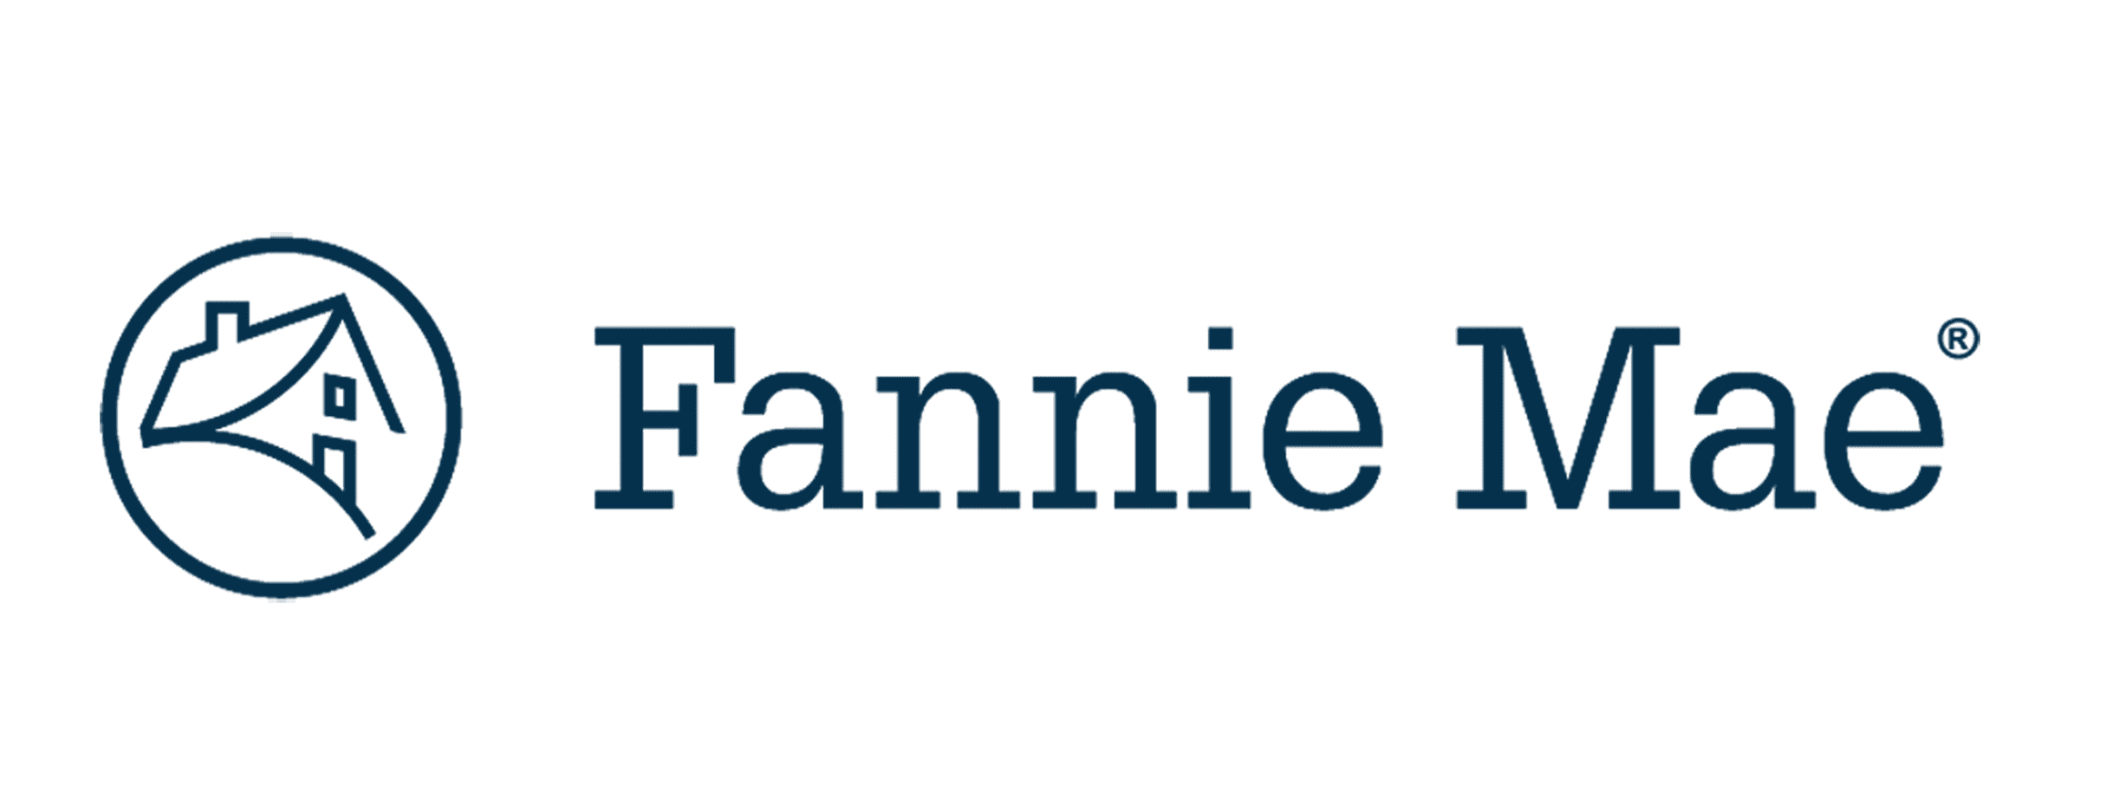 Fannie Mae-1